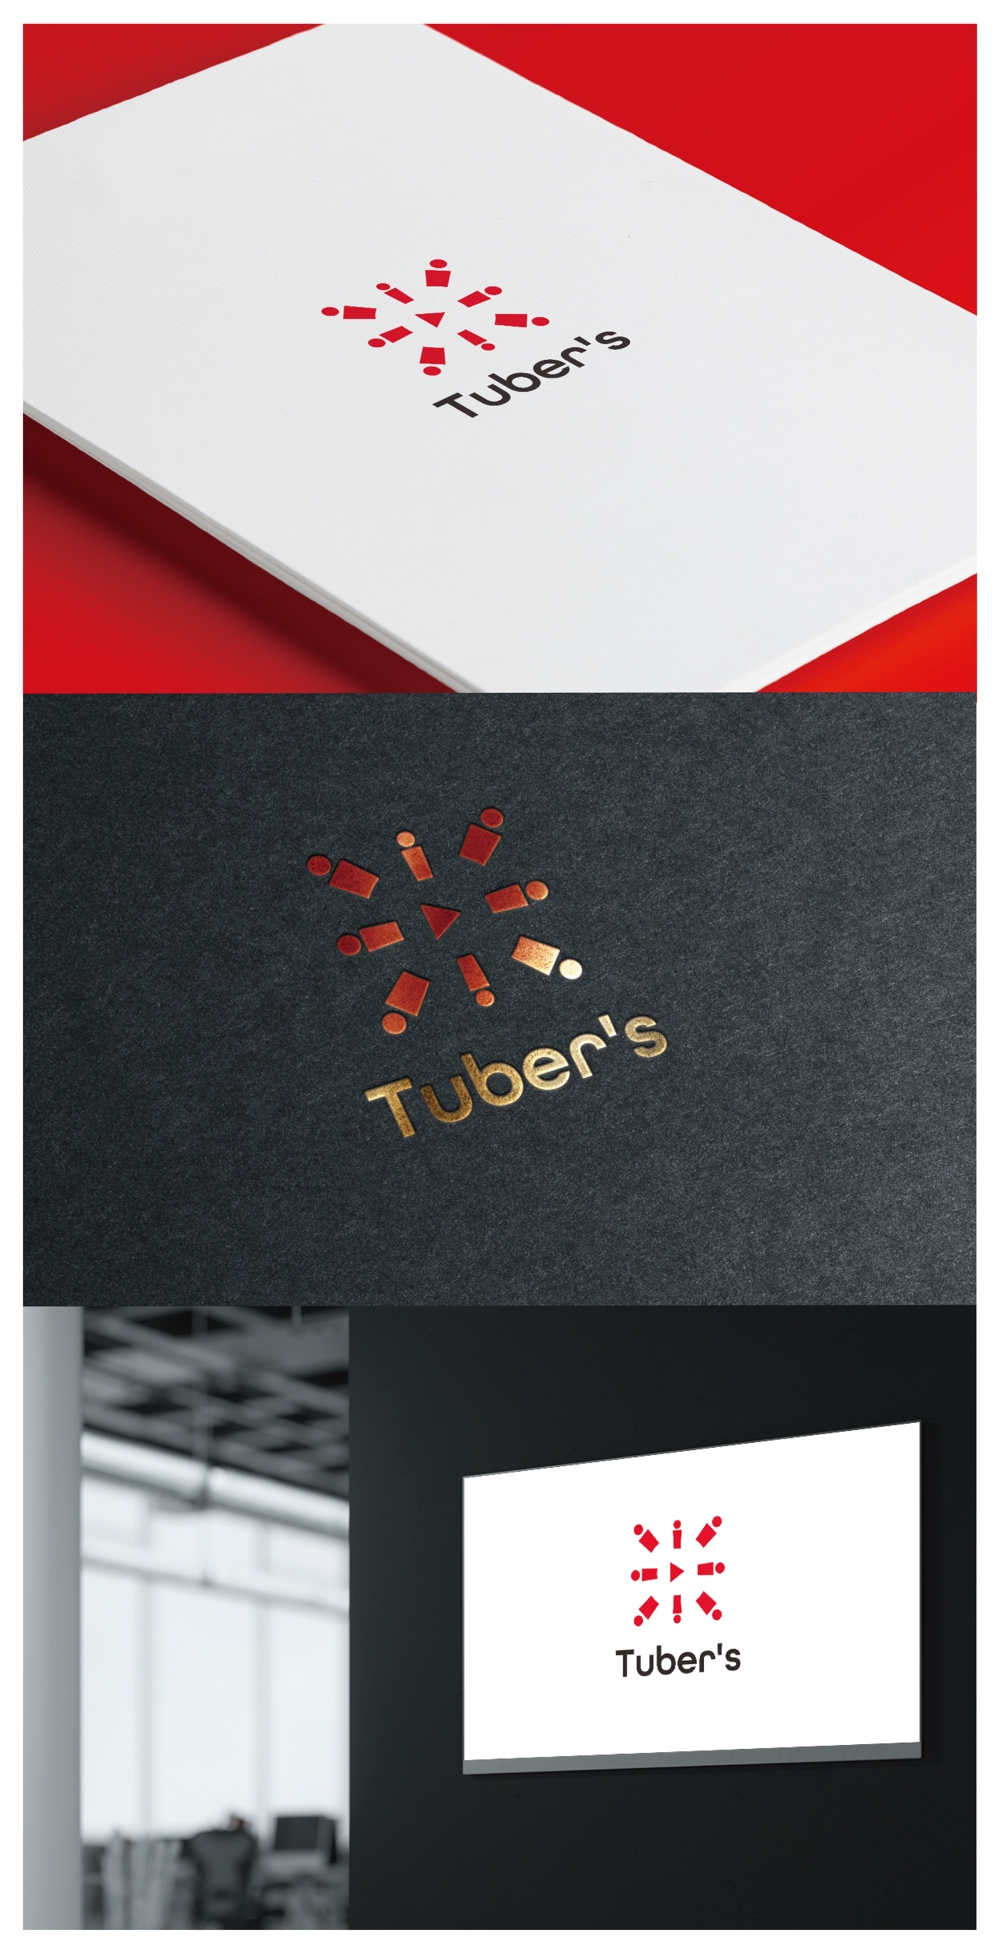 Tuber's_logo02_01.jpg